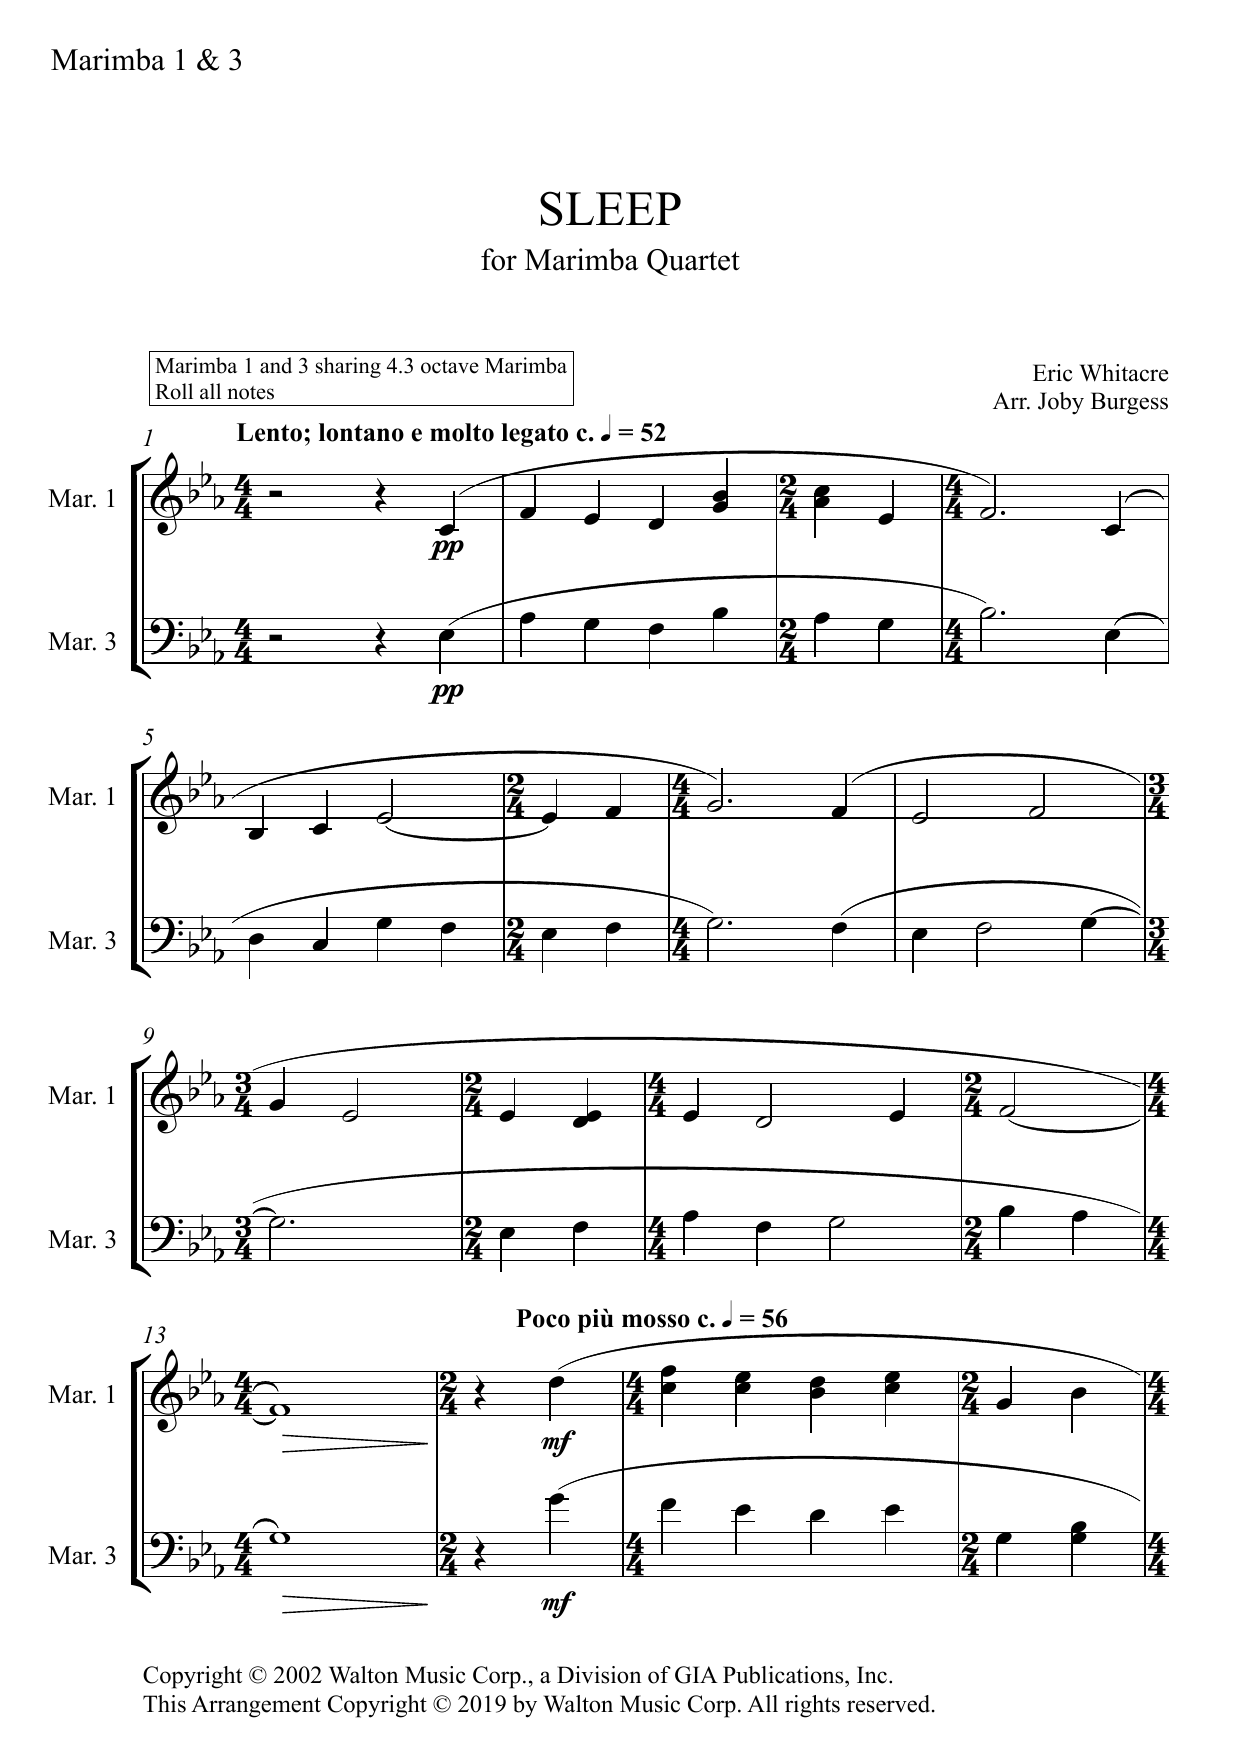 Eric Whitacre Sleep for Marimba Quartet (arr. Joby Burgess) - MARIMBA 1 & 3 sheet music notes and chords arranged for Percussion Ensemble